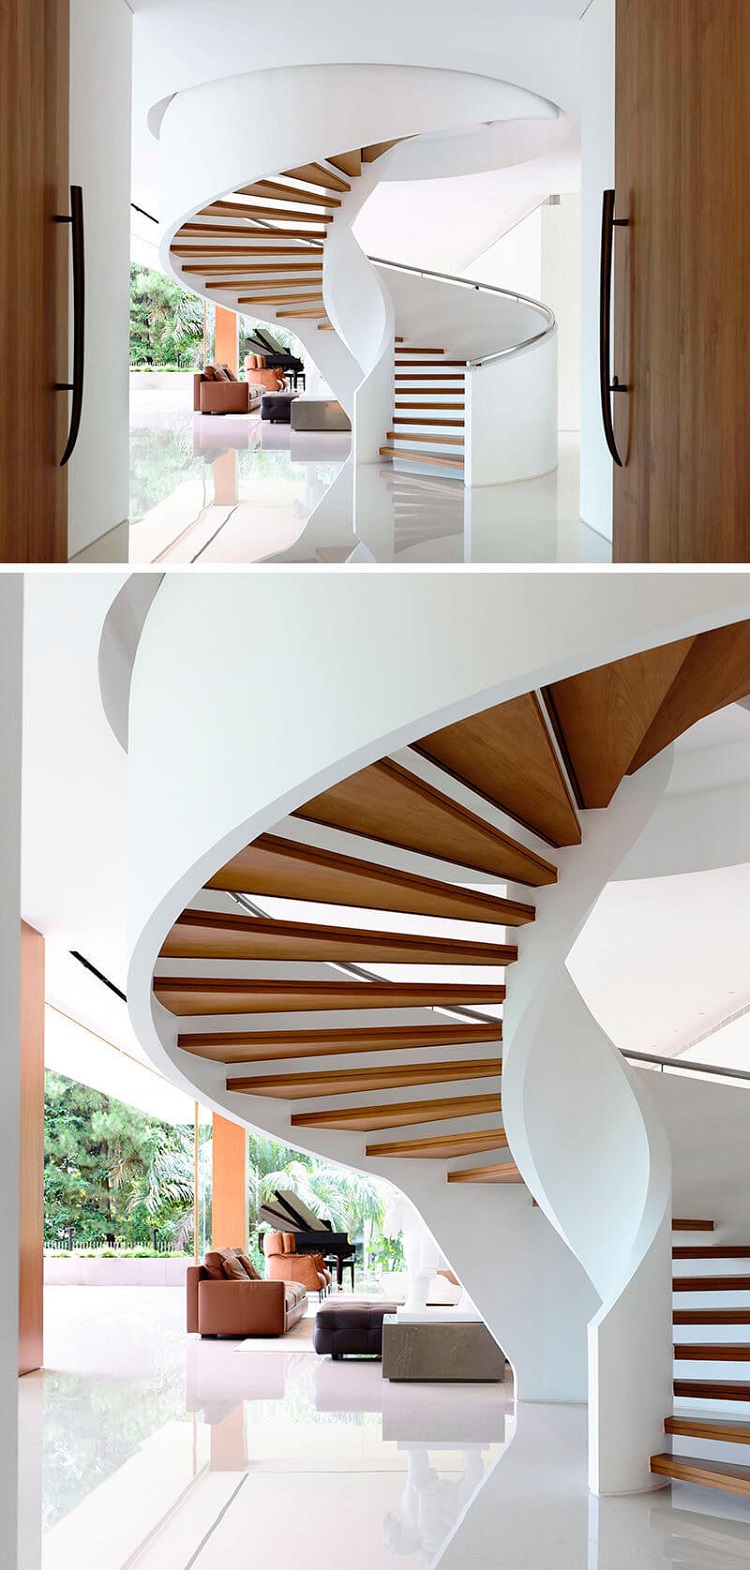 escaliers en colimaçon blancs design bois béton idée moderne aménagement intérieur